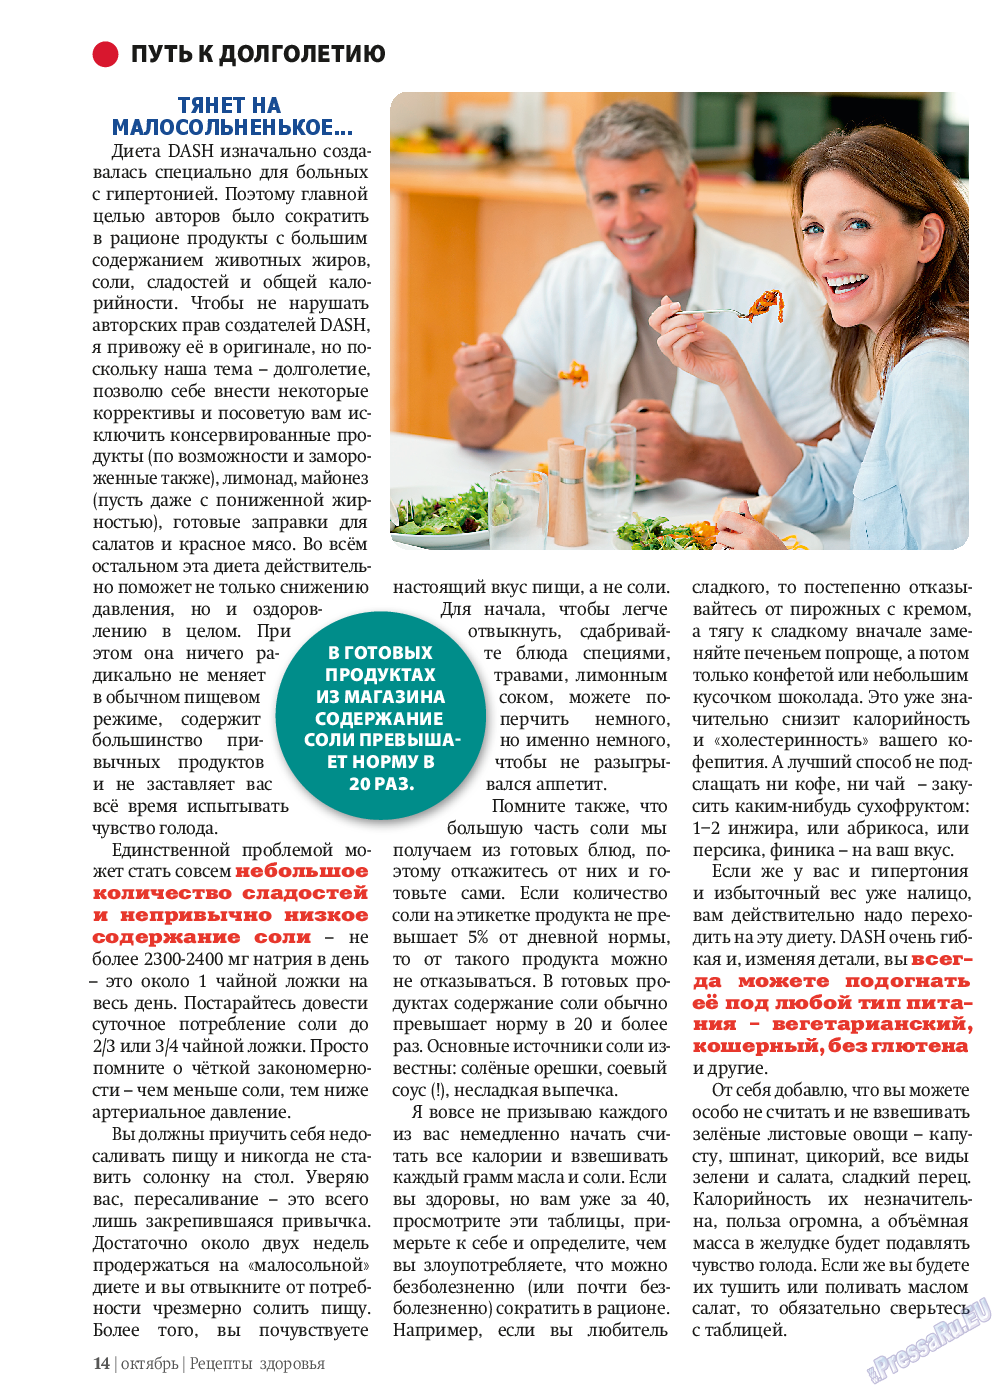 Рецепты здоровья, журнал. 2013 №10 стр.14